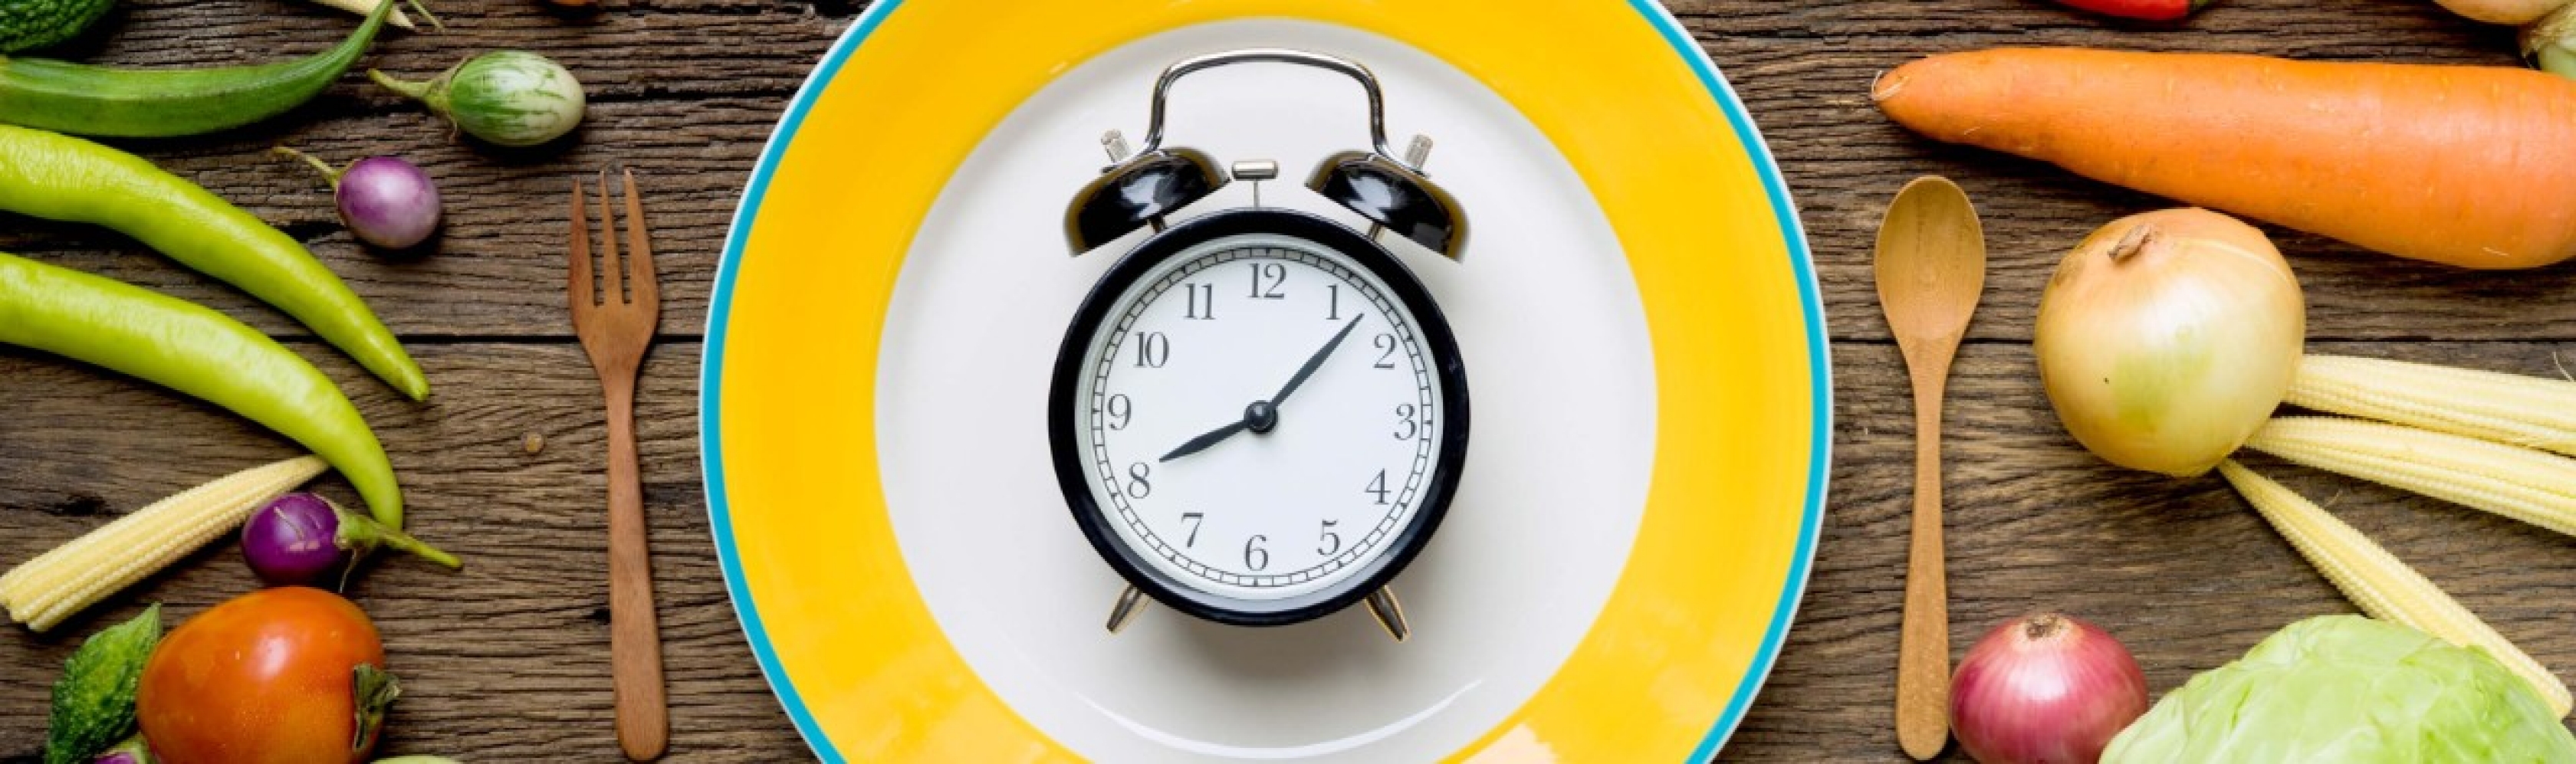 Meal prep: un réveil posé sur une assiette symbolise le temps que l’on gagne en préparant ses repas à l’avance.